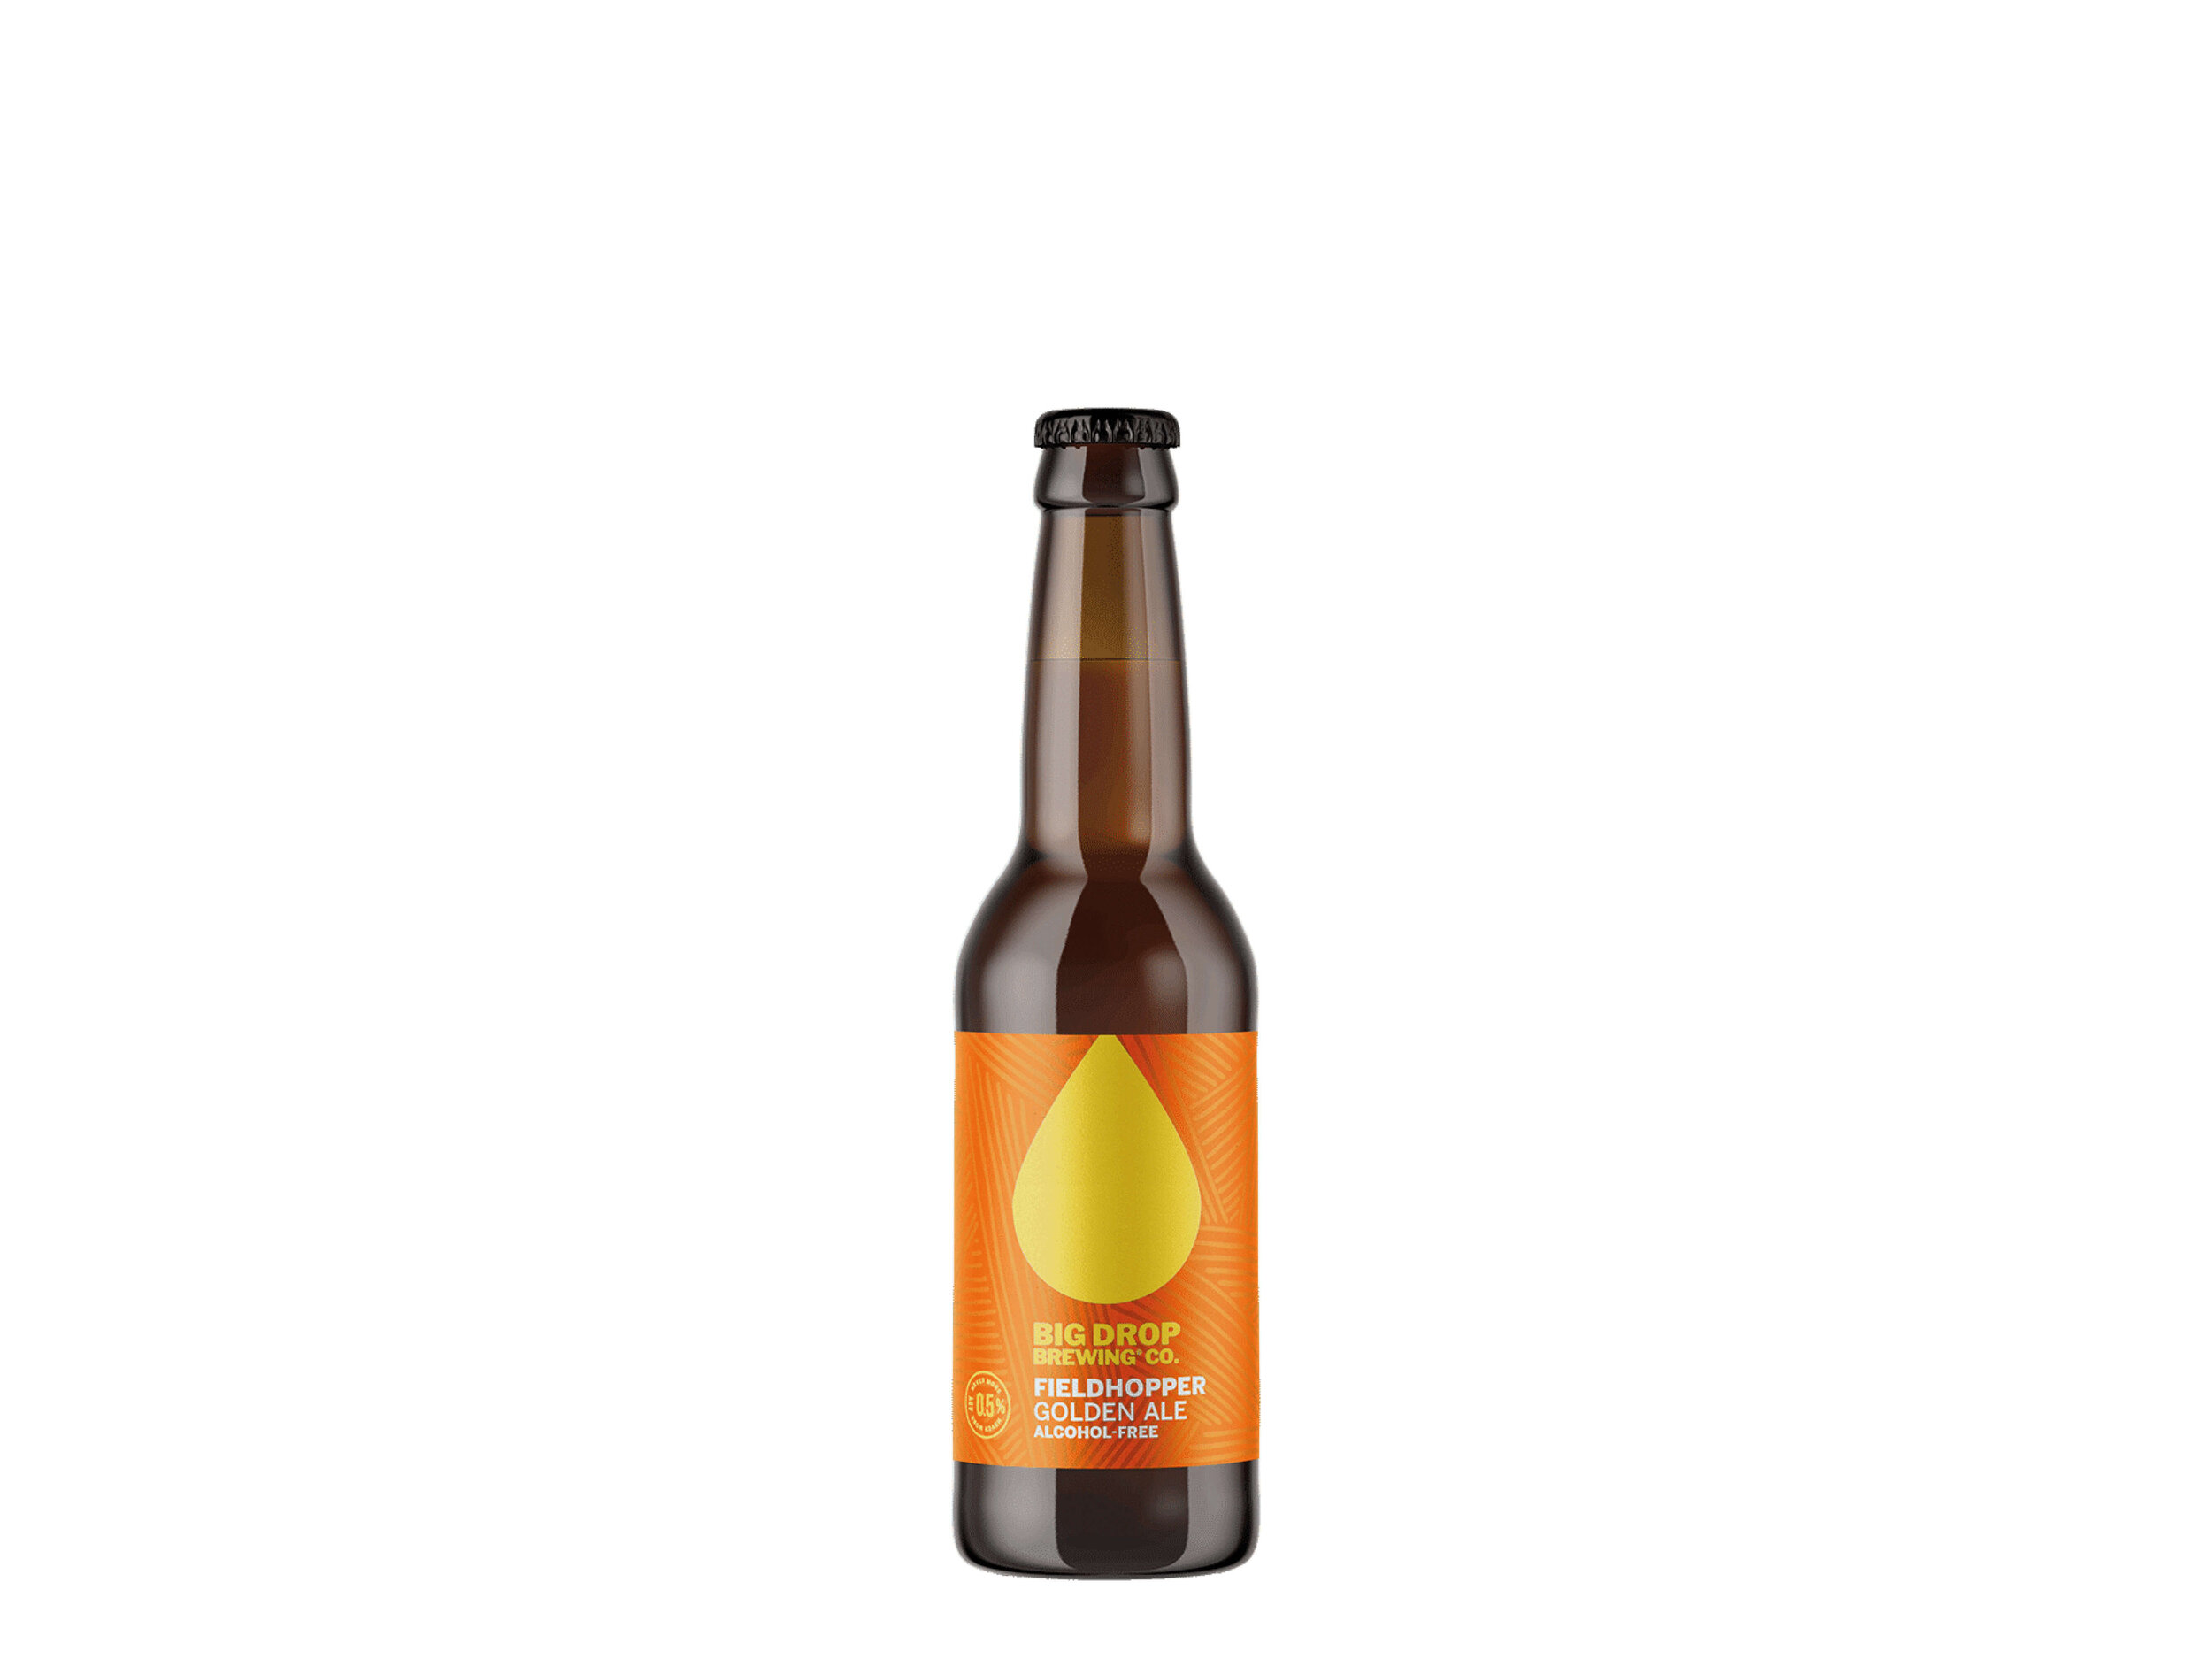 Big Drop Brewing Co. Fieldhopper Golden Ale — La Maison Wellness